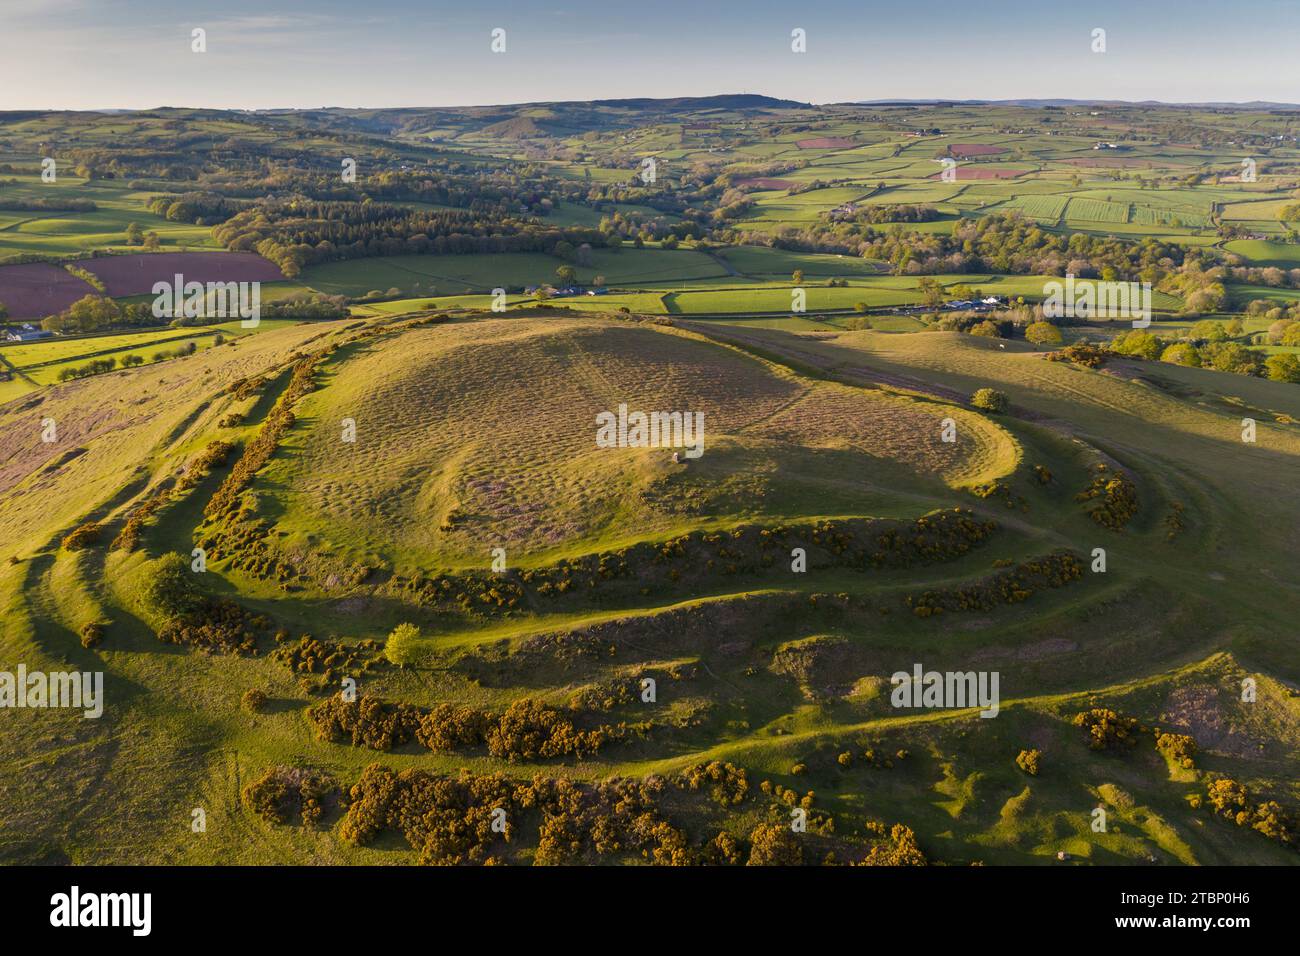 Vue aérienne de Pen-y-Crug Iron Age Hillfort près de Brecon à Bannau Brycheiniog anciennement connu sous le nom de Brecon Beacons National Park, Powys, pays de Galles, Royaume-Uni. Banque D'Images